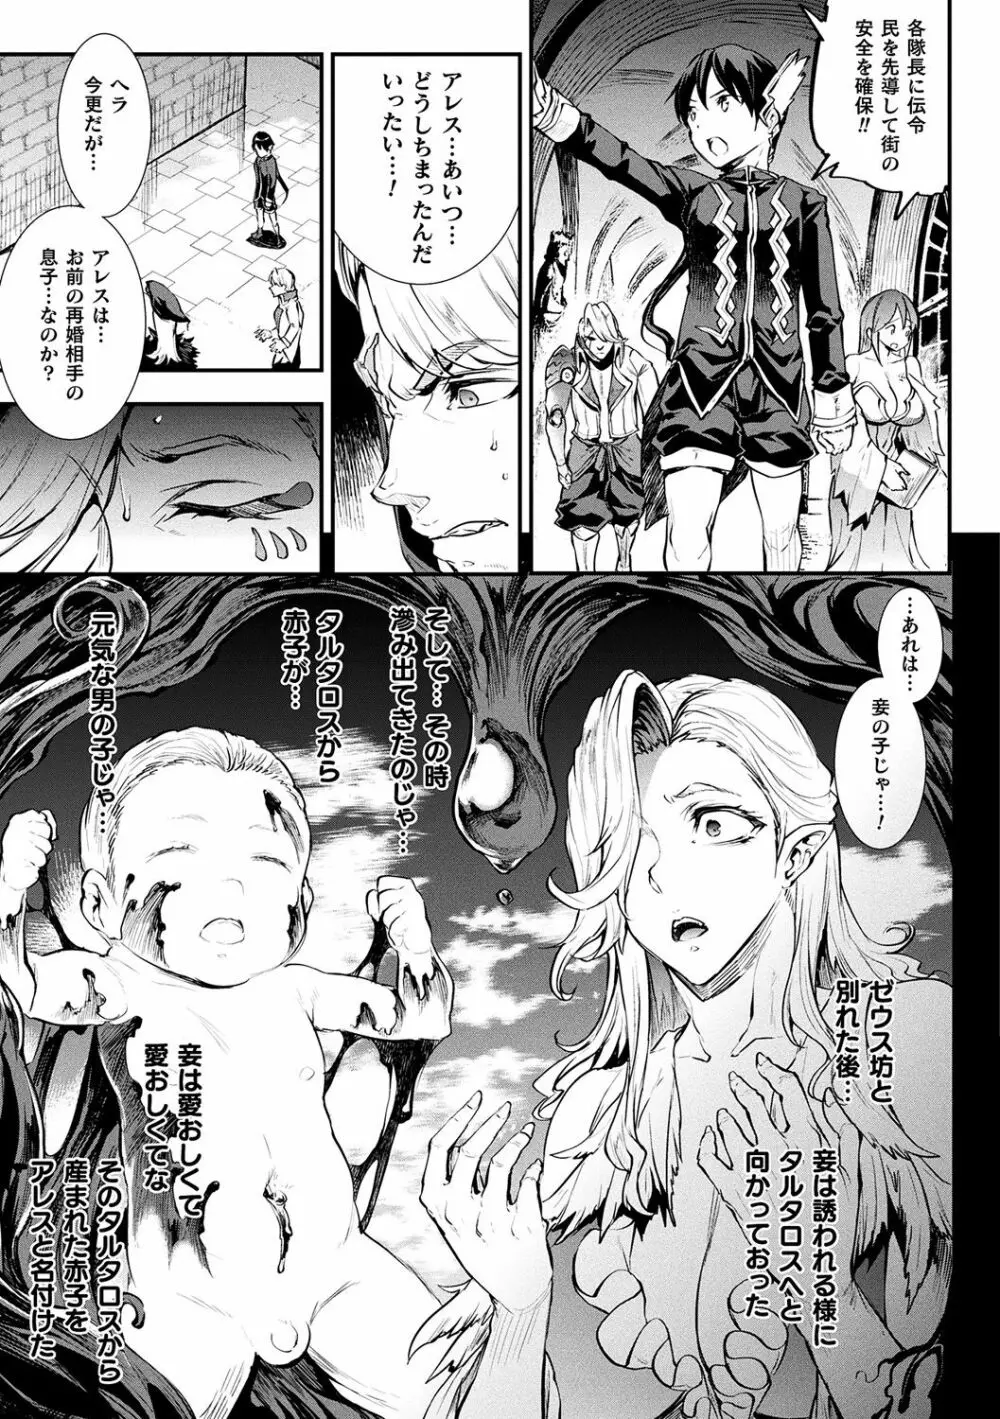 [エレクトさわる] 雷光神姫アイギスマギアII -PANDRA saga 3rd ignition- + 電子書籍特典デジタルポスター [DL版] 147ページ